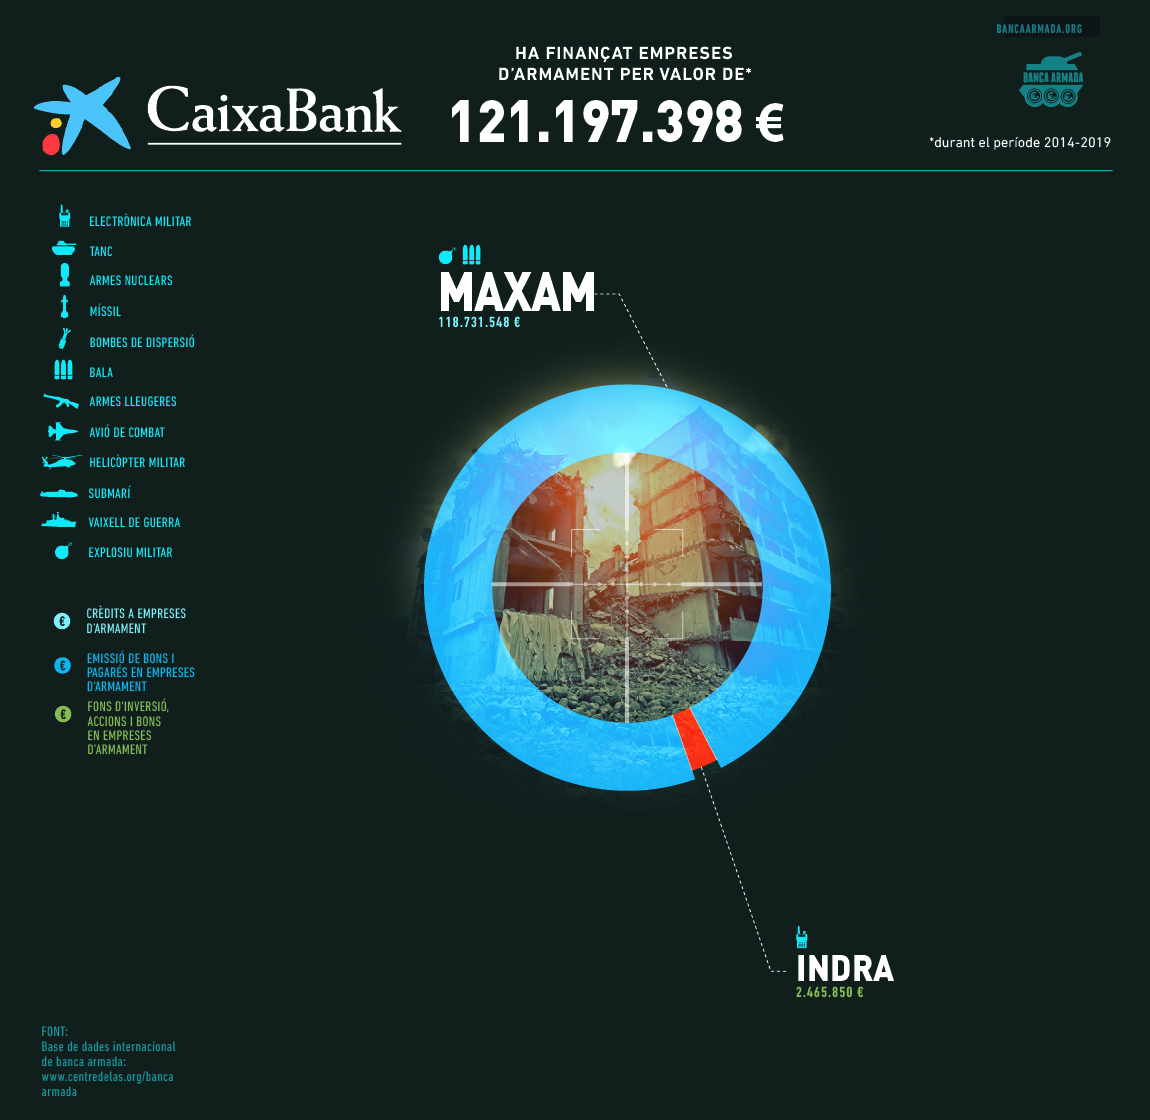 Infografia “CaixaBank: finançament a empreses d’armament 2014-2019”